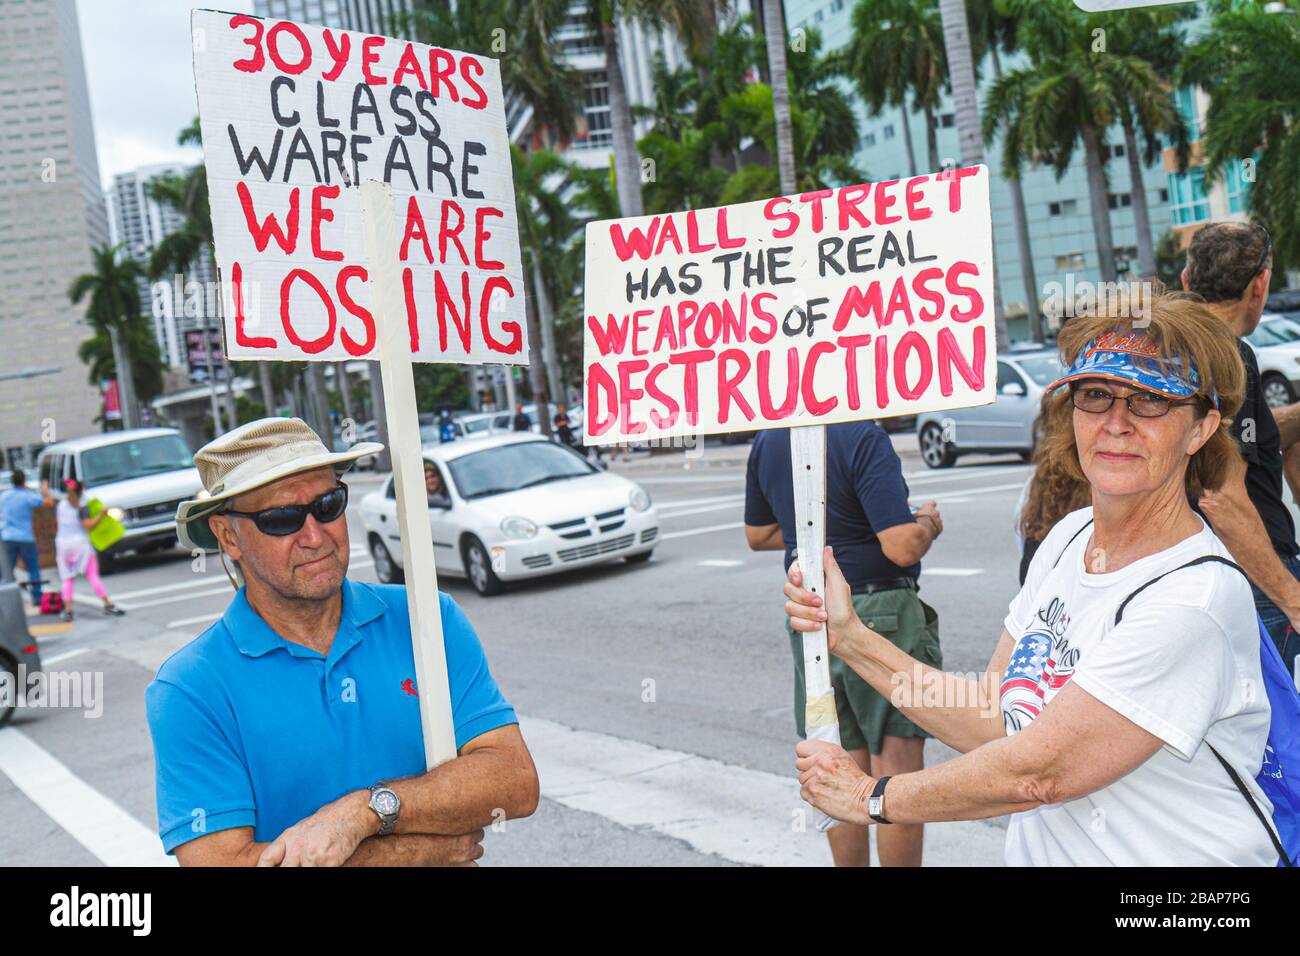 Miami Florida, Biscayne Boulevard, Freiheitsfackel, Occupy Miami, Demonstration, Protest, Demonstranten, Anti-Wall Street, Banken, Gier der Unternehmen, Schild, Logo, Poster, m Stockfoto